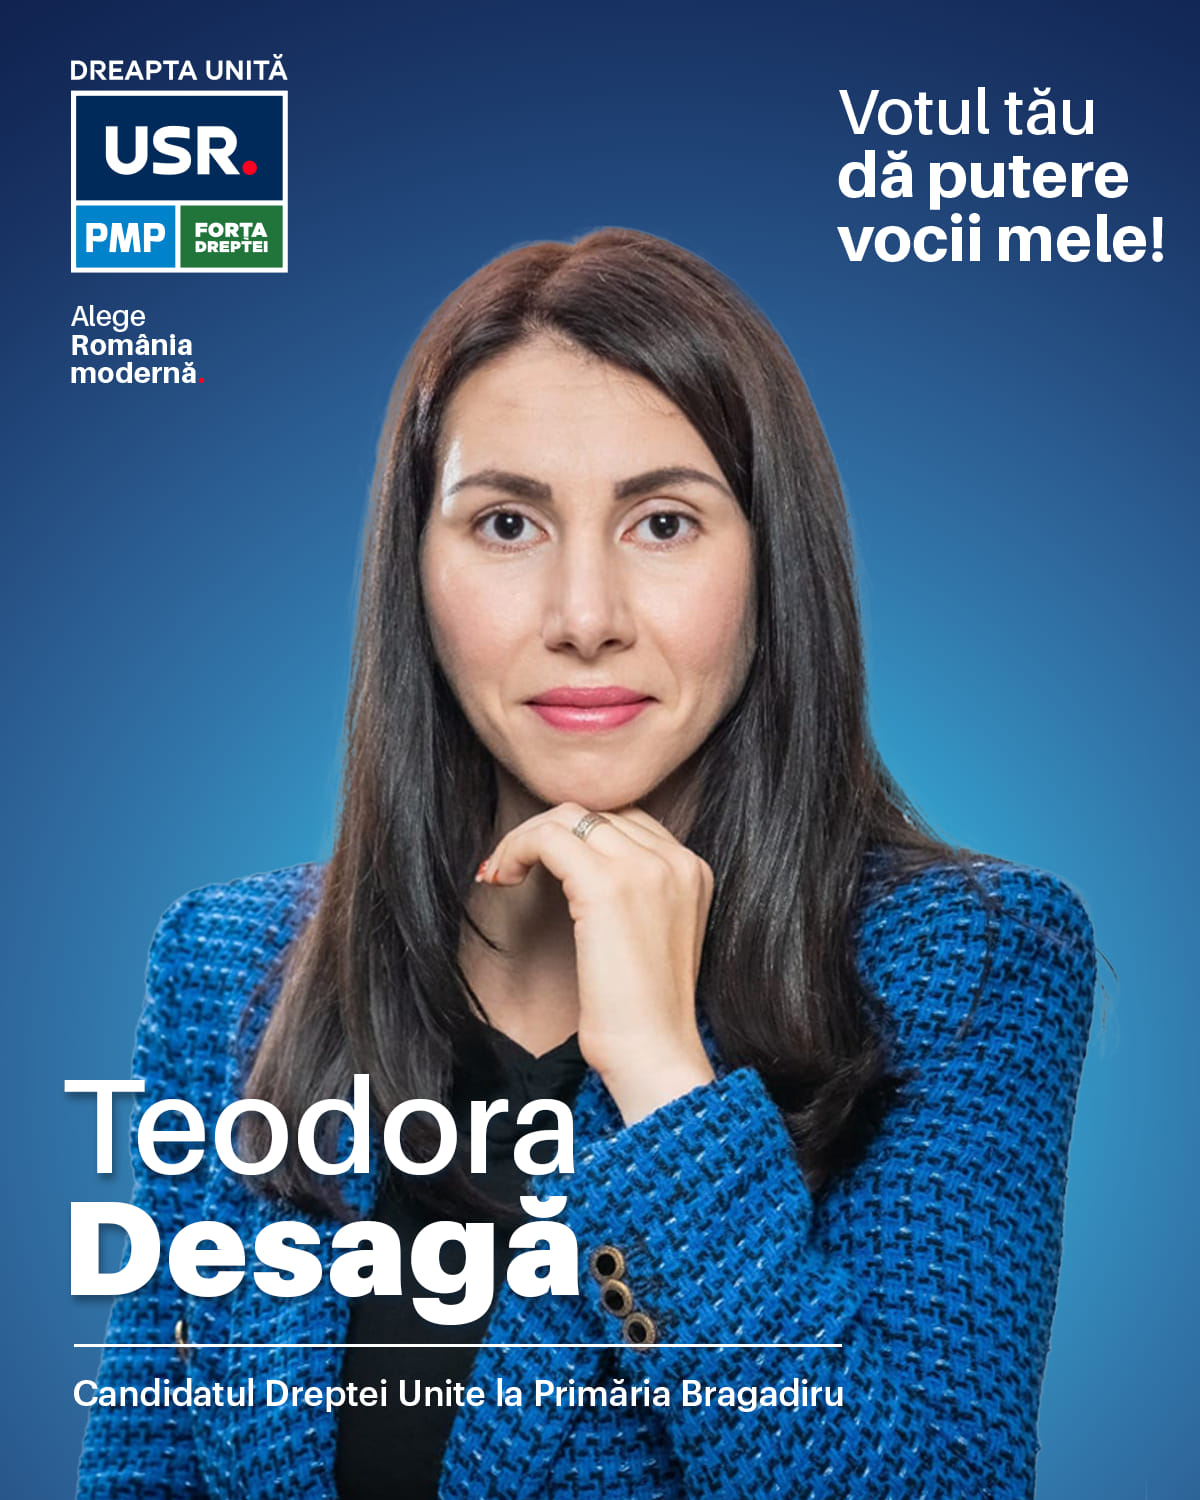 Teodora Desagă, candidatul Dreptei Unite pentru Primăria Bragadiru